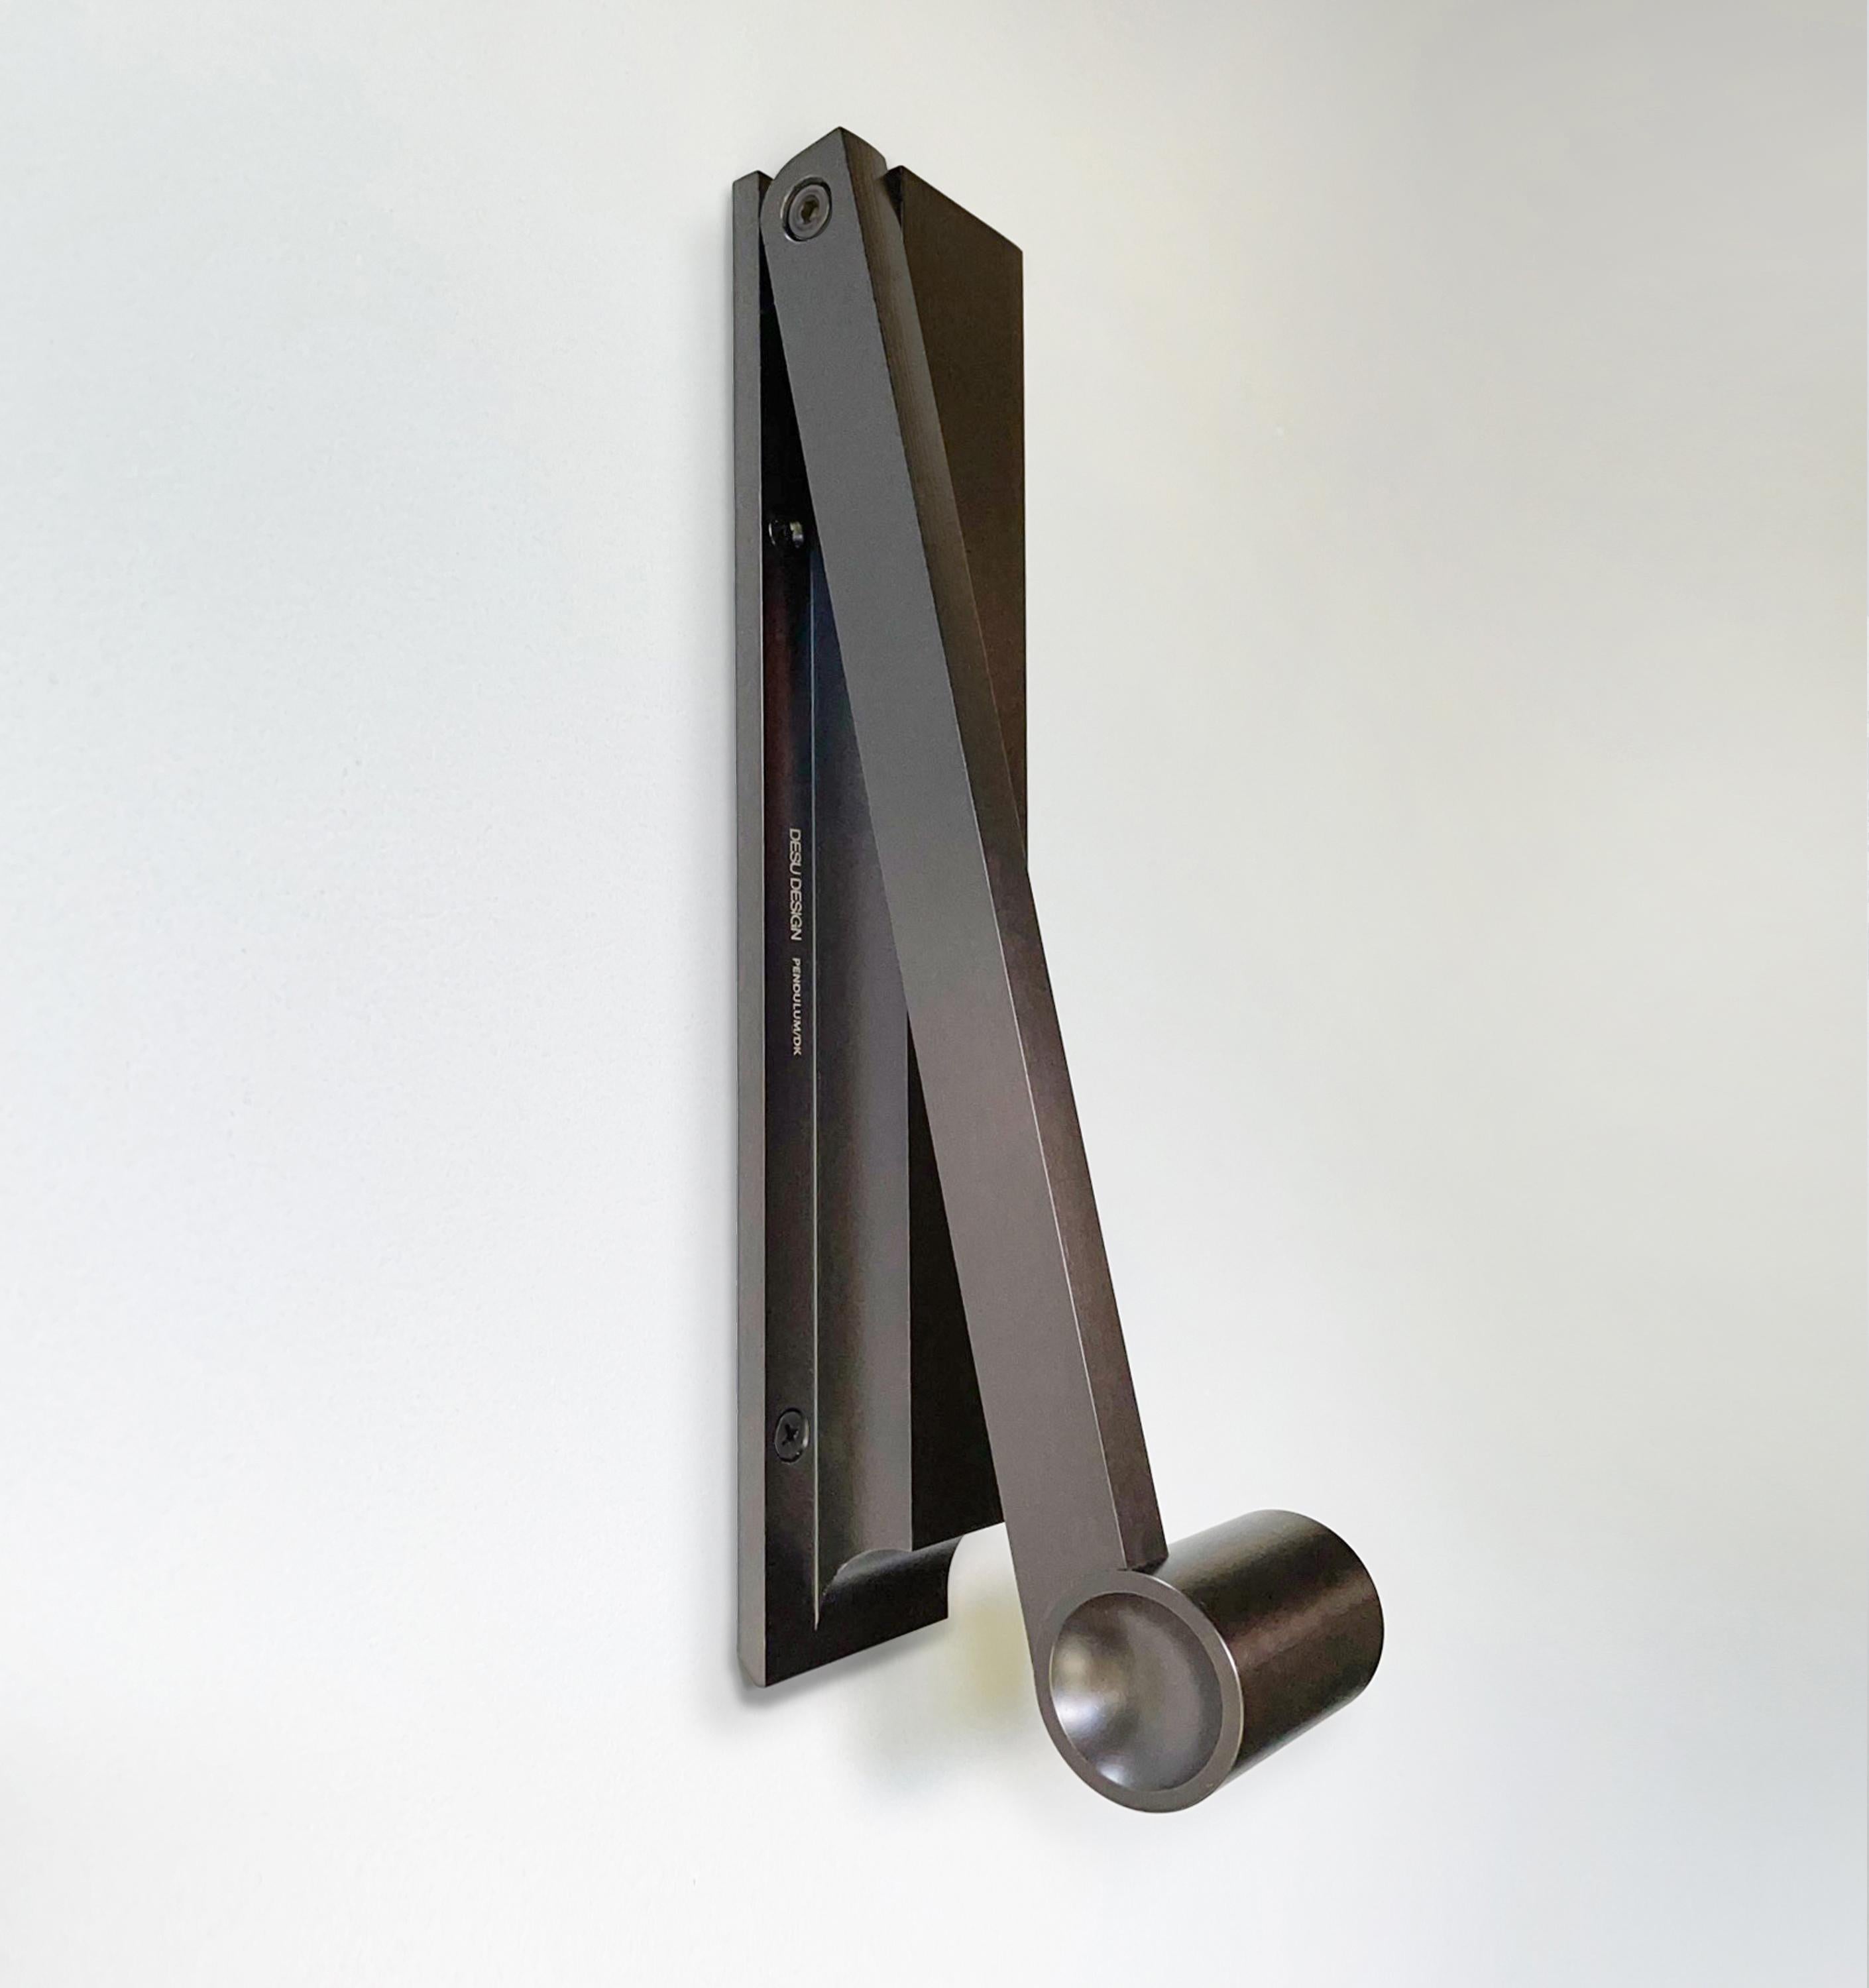 Le heurtoir de porte sculptural Pendulum associe l'artisanat du vieux monde à une utilité sans fioritures pour créer un art minimaliste. Le poids élevé de la poignée est agréable dans la main et les côtés sont légèrement en retrait pour une prise en